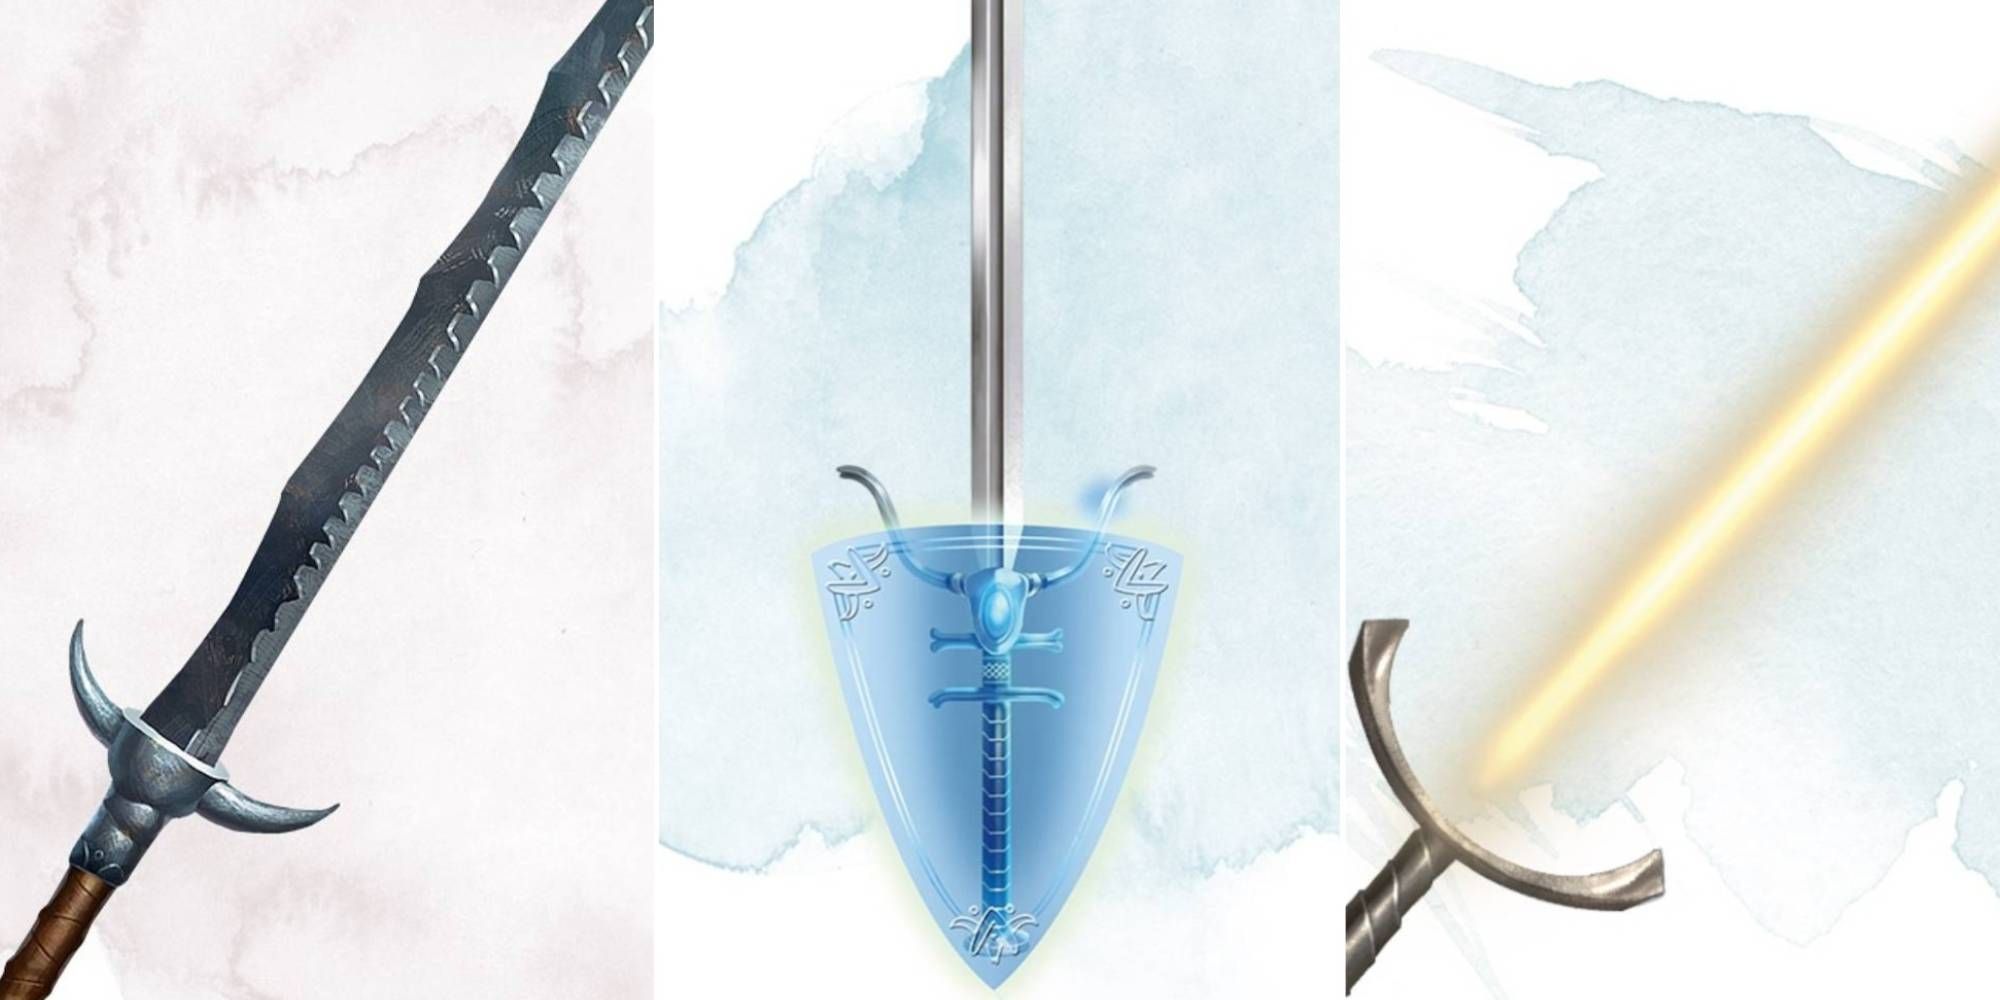 Un collage di immagini che mostrano una spada oscura, una spada con uno scudo illusorio sull'elsa e una lama luminosa.